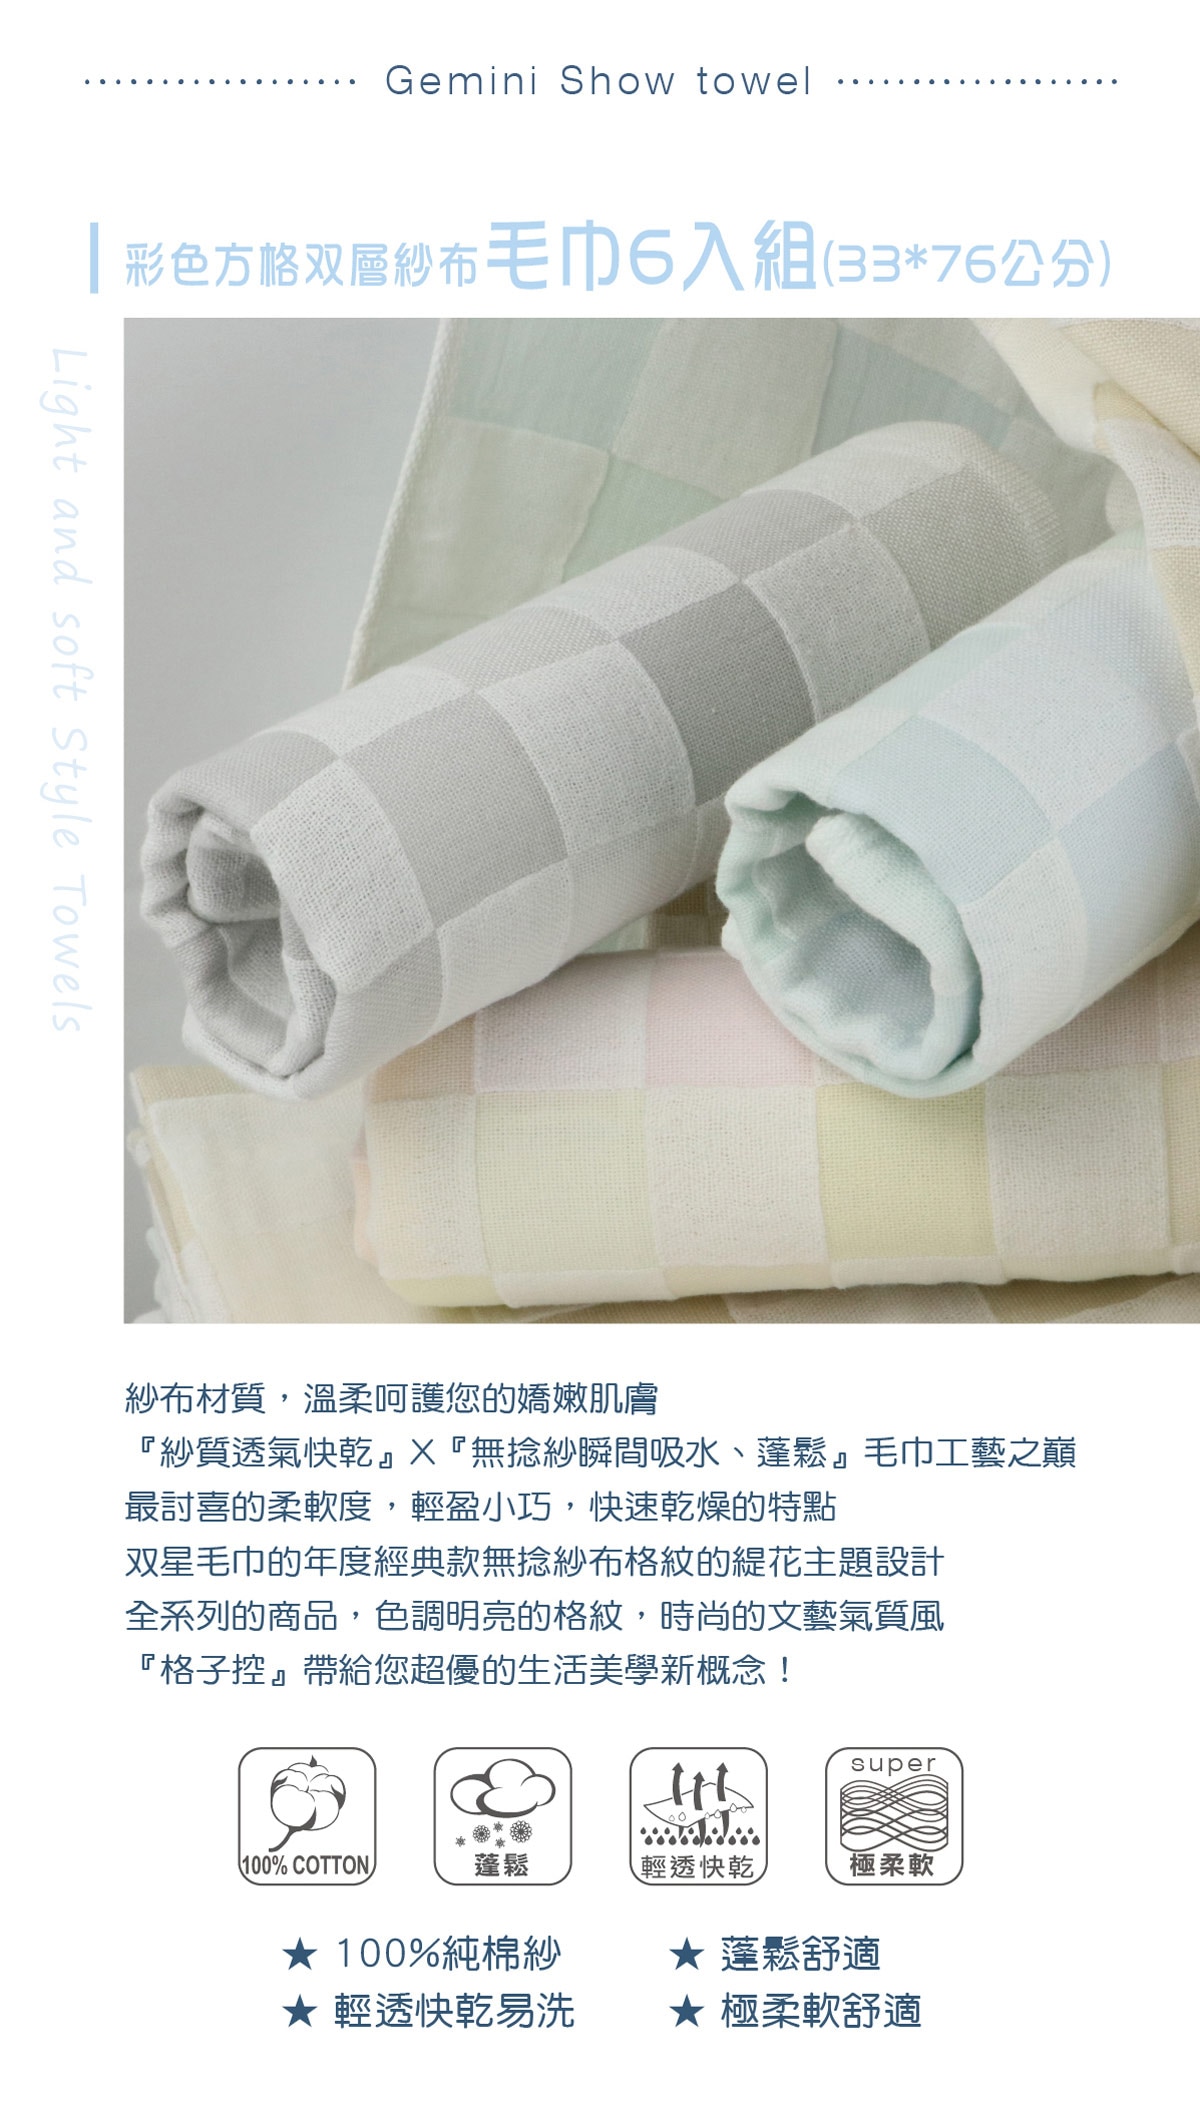 Gemini雙星毛巾彩色方格雙層紗布毛巾為紗布材質,輕透快乾易洗,蓬鬆舒適,極柔軟。